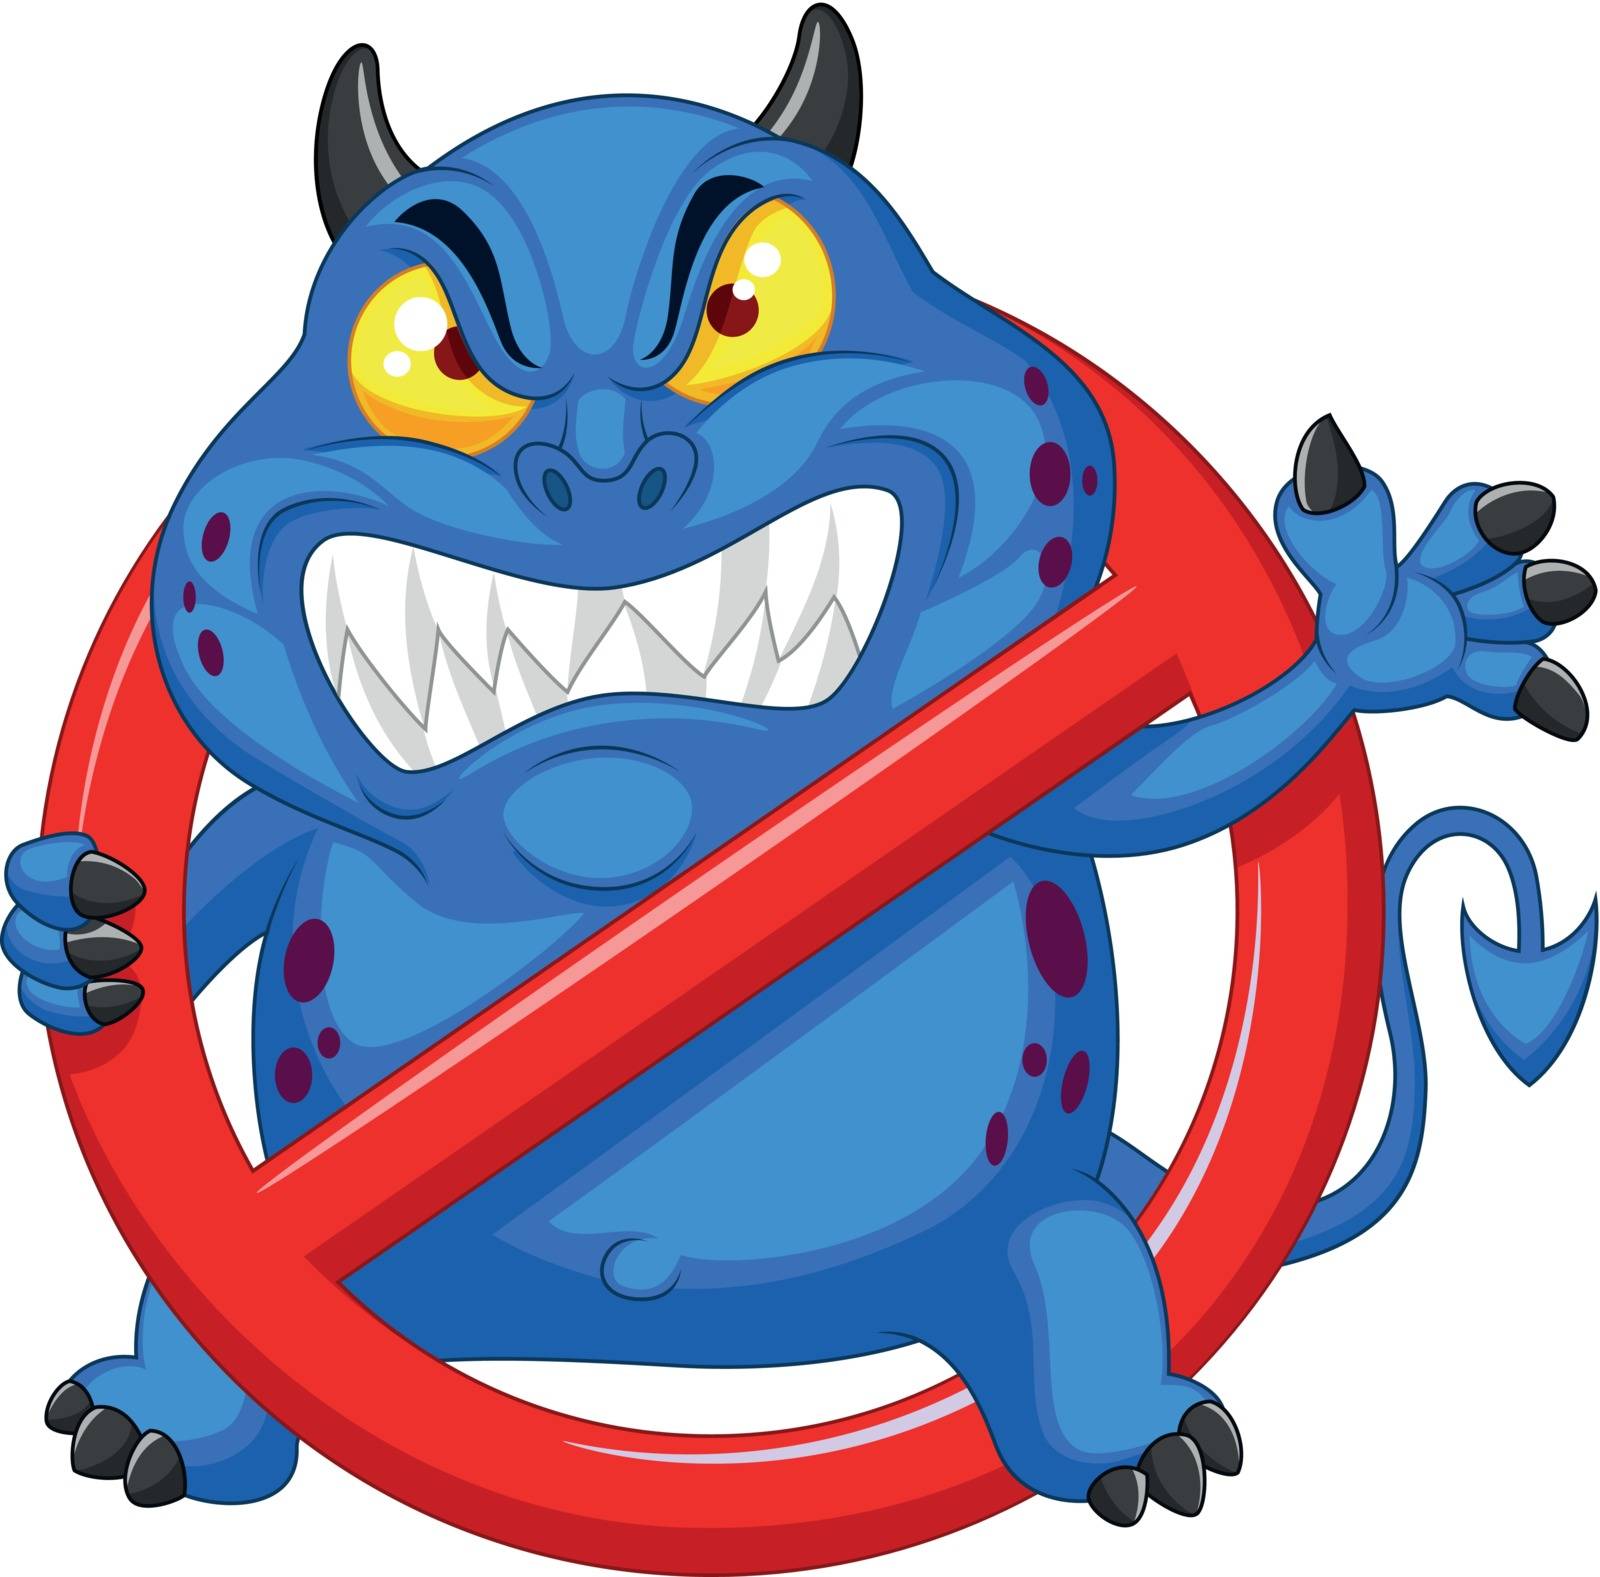 Stop virus - blue virus in red alert sign by tigatelu